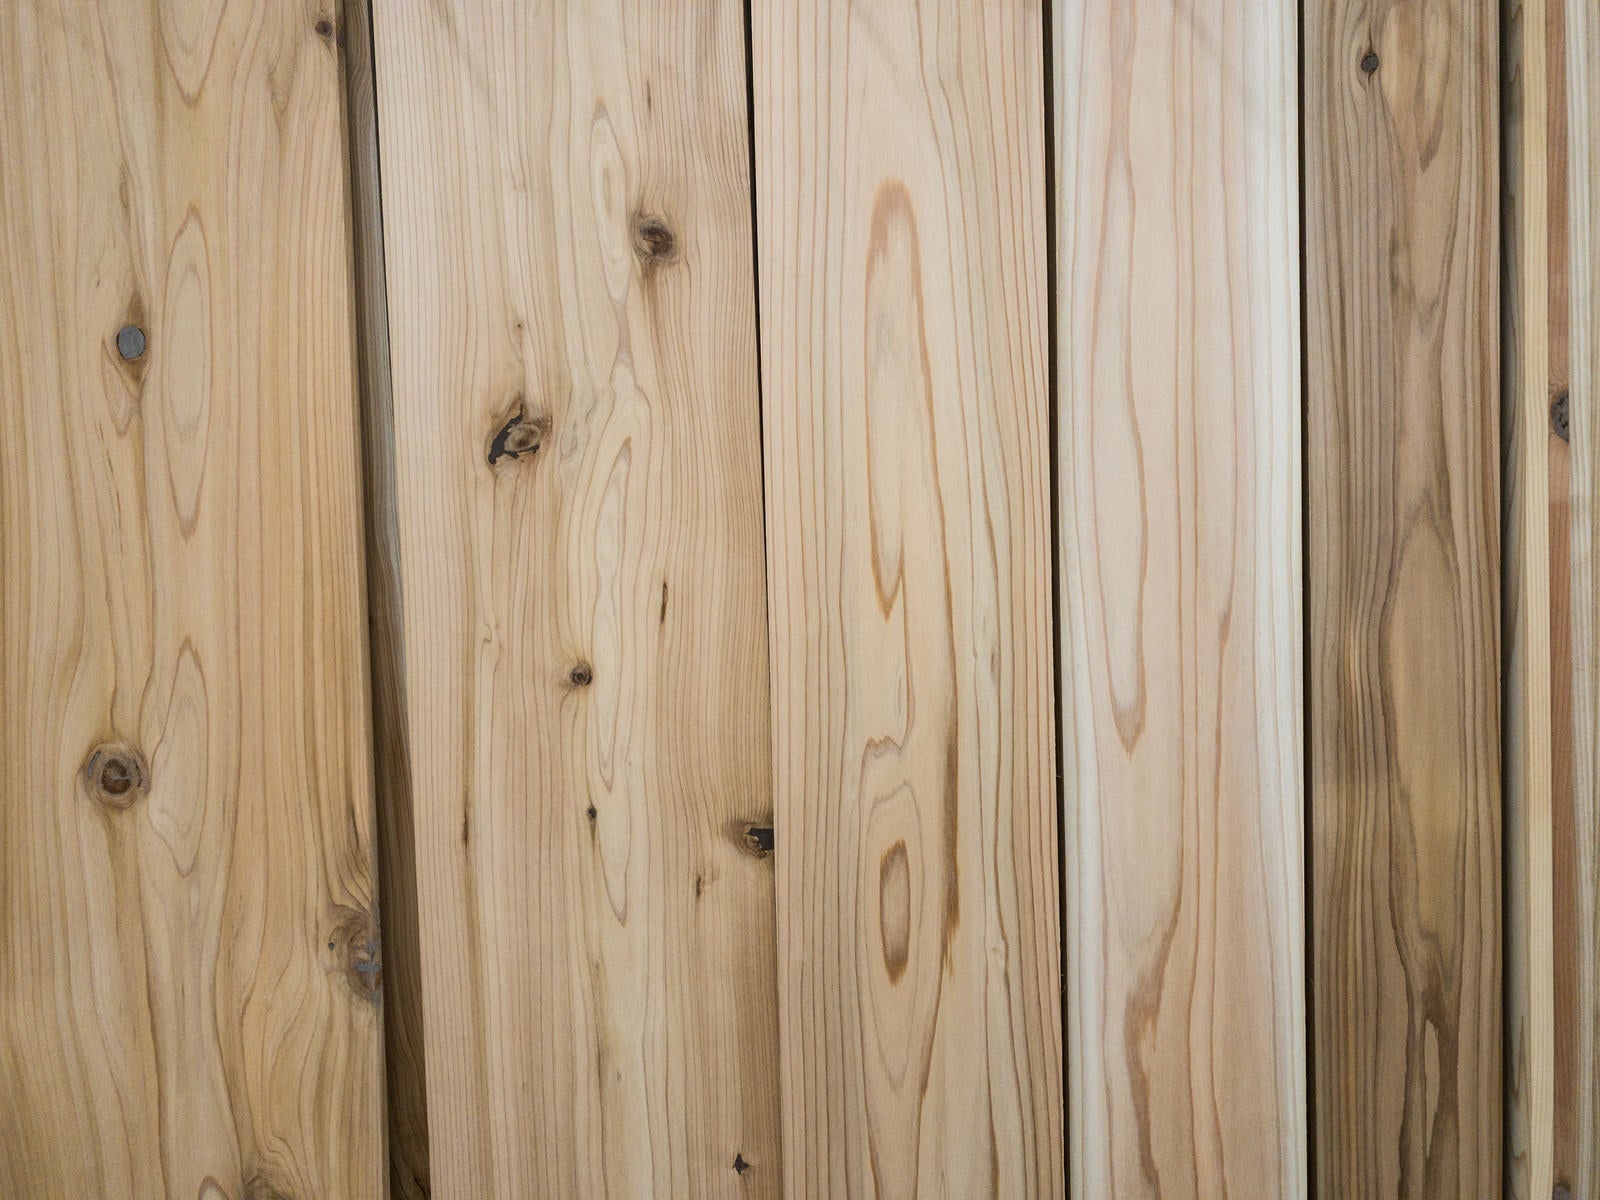 「不揃いな木目の木材」の写真